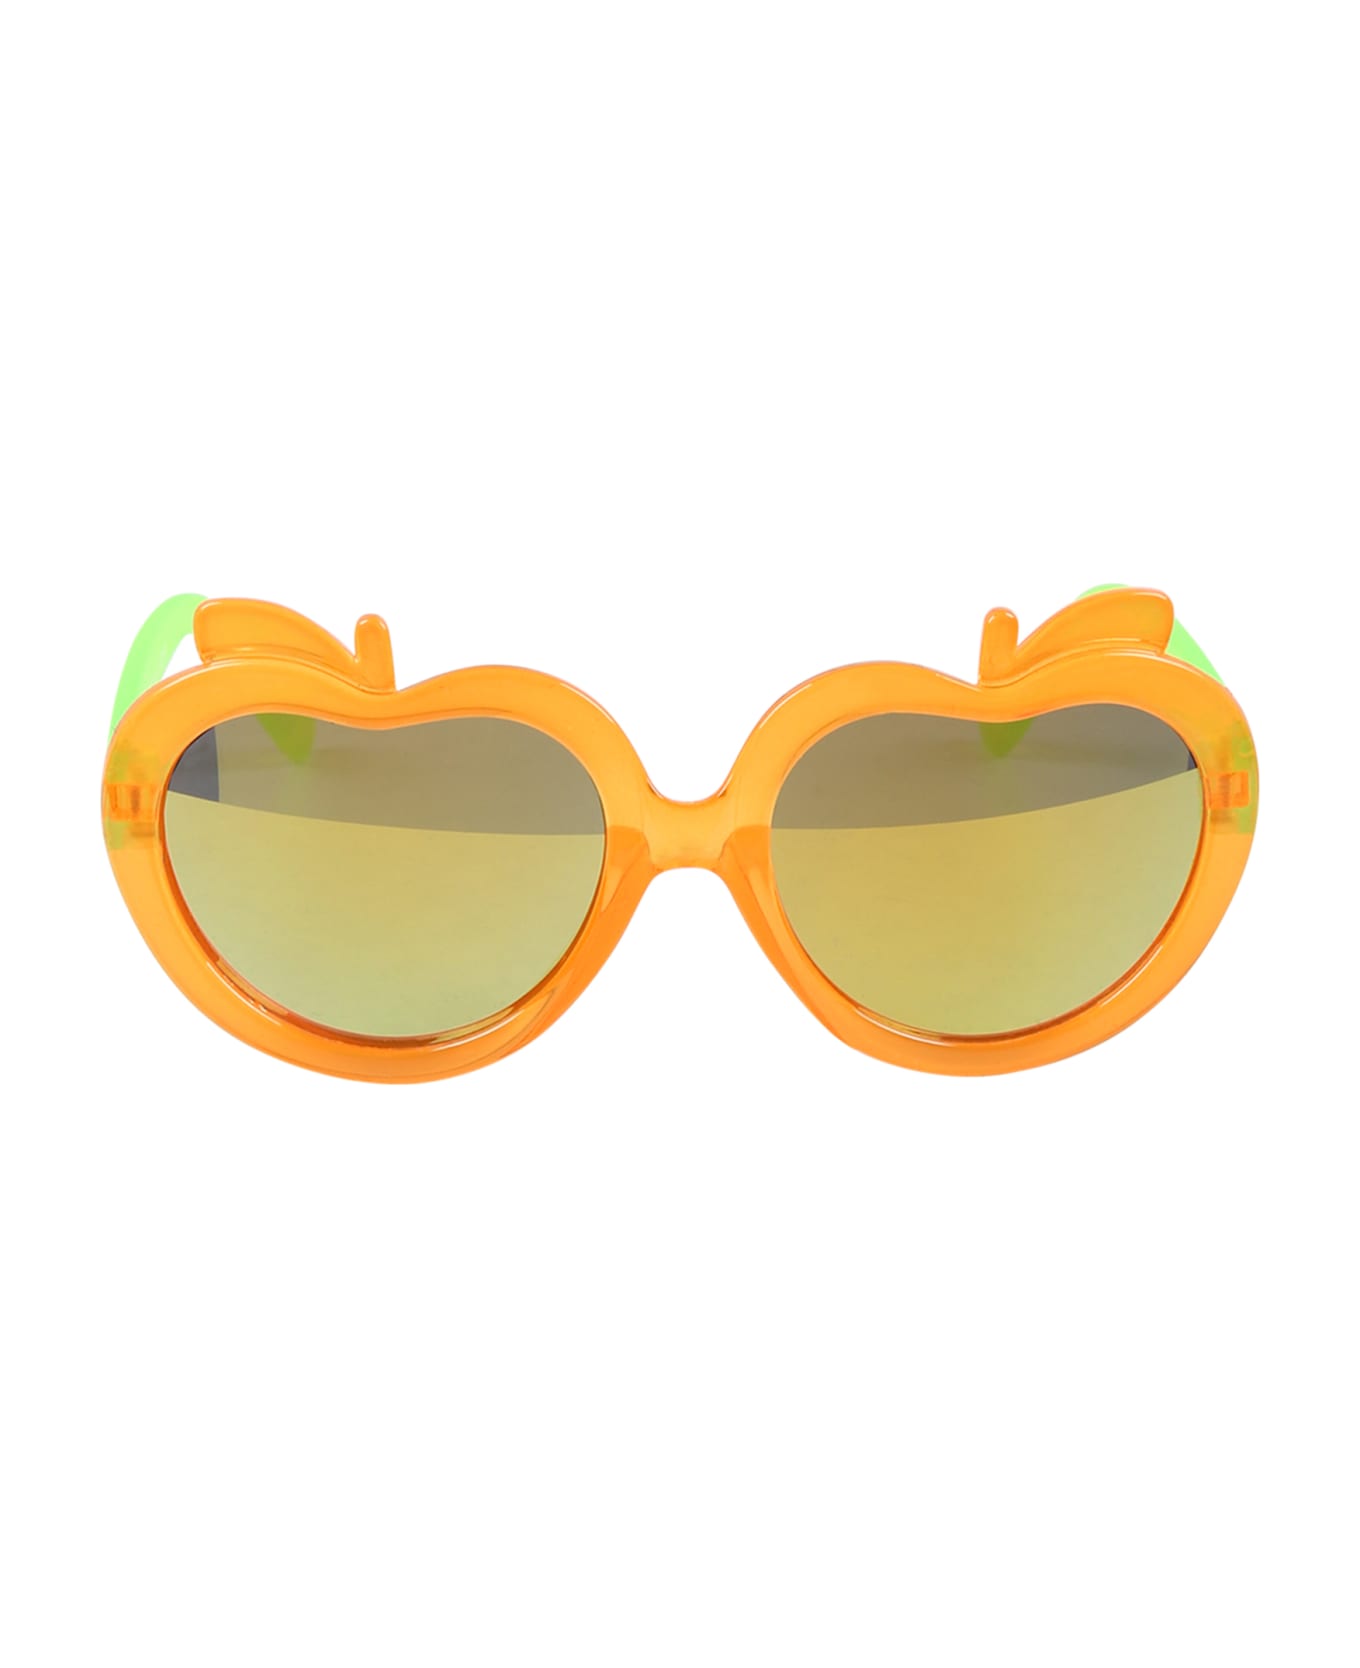 Molo Orange So Orange Sunglasses For Girl - Orange